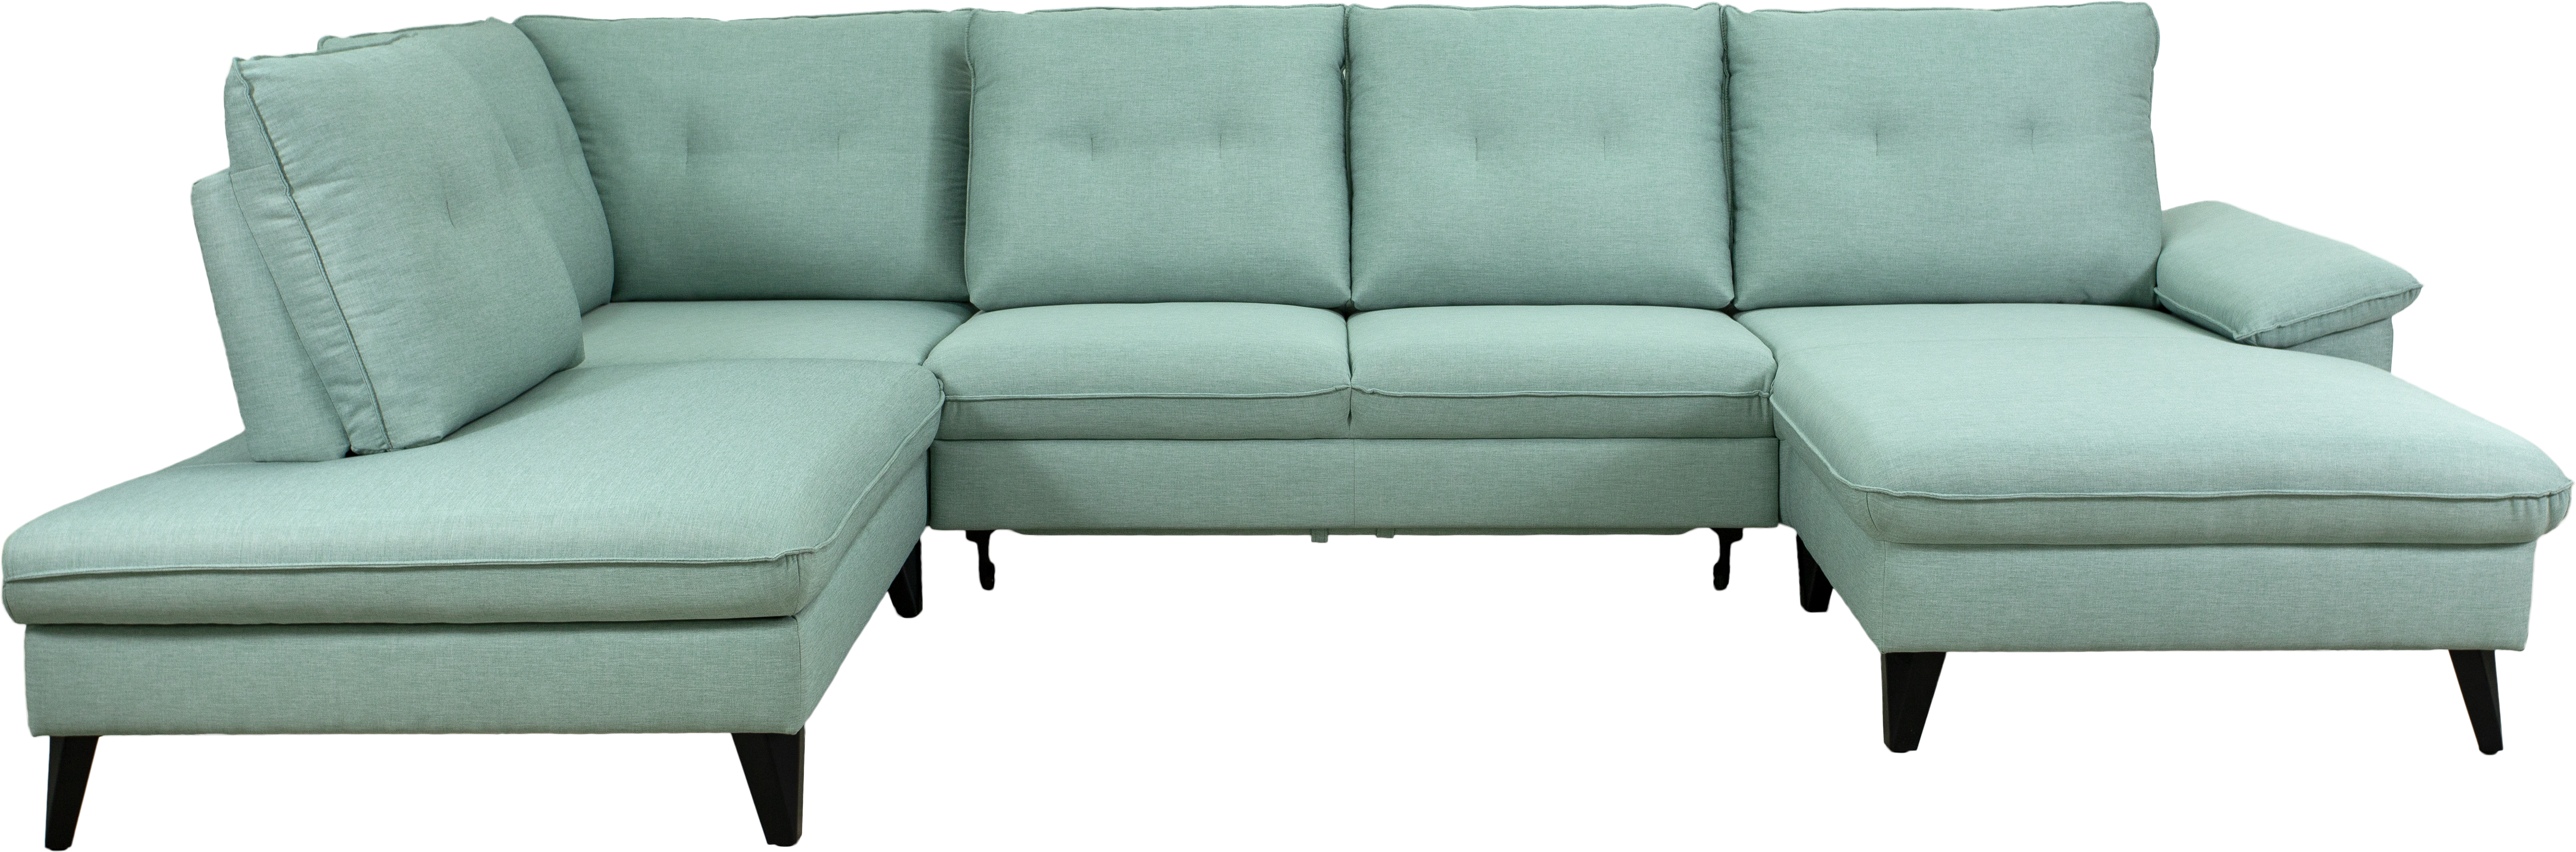 pohodlna-sedacka-s-uloznym-prostorem-cipex-2